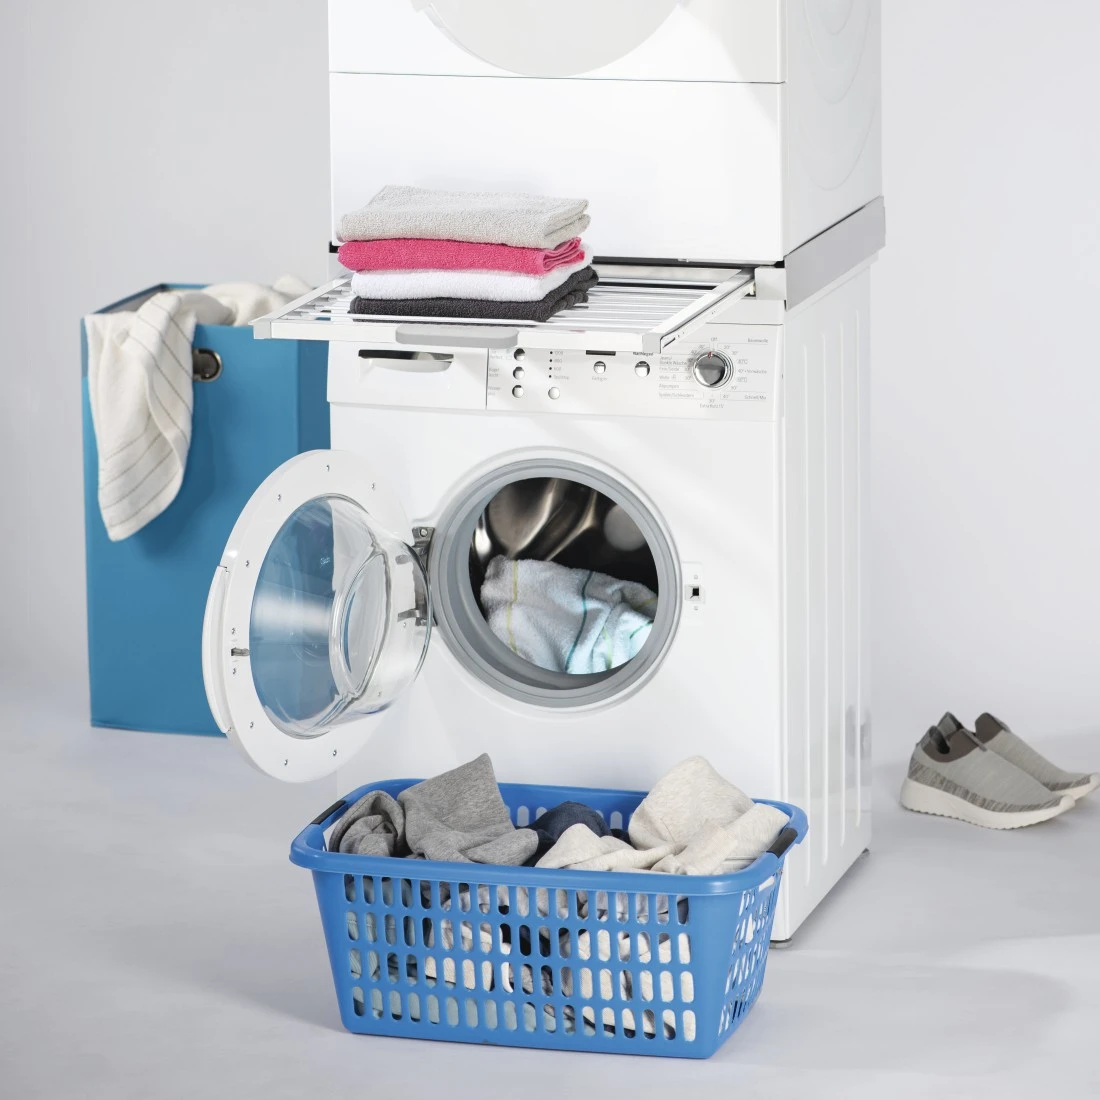 awx4 Druckfähige Anwendung 4 - Xavax, Zwischenbausatz für Waschmaschinen/Trockner, integrierter Wäscheständer